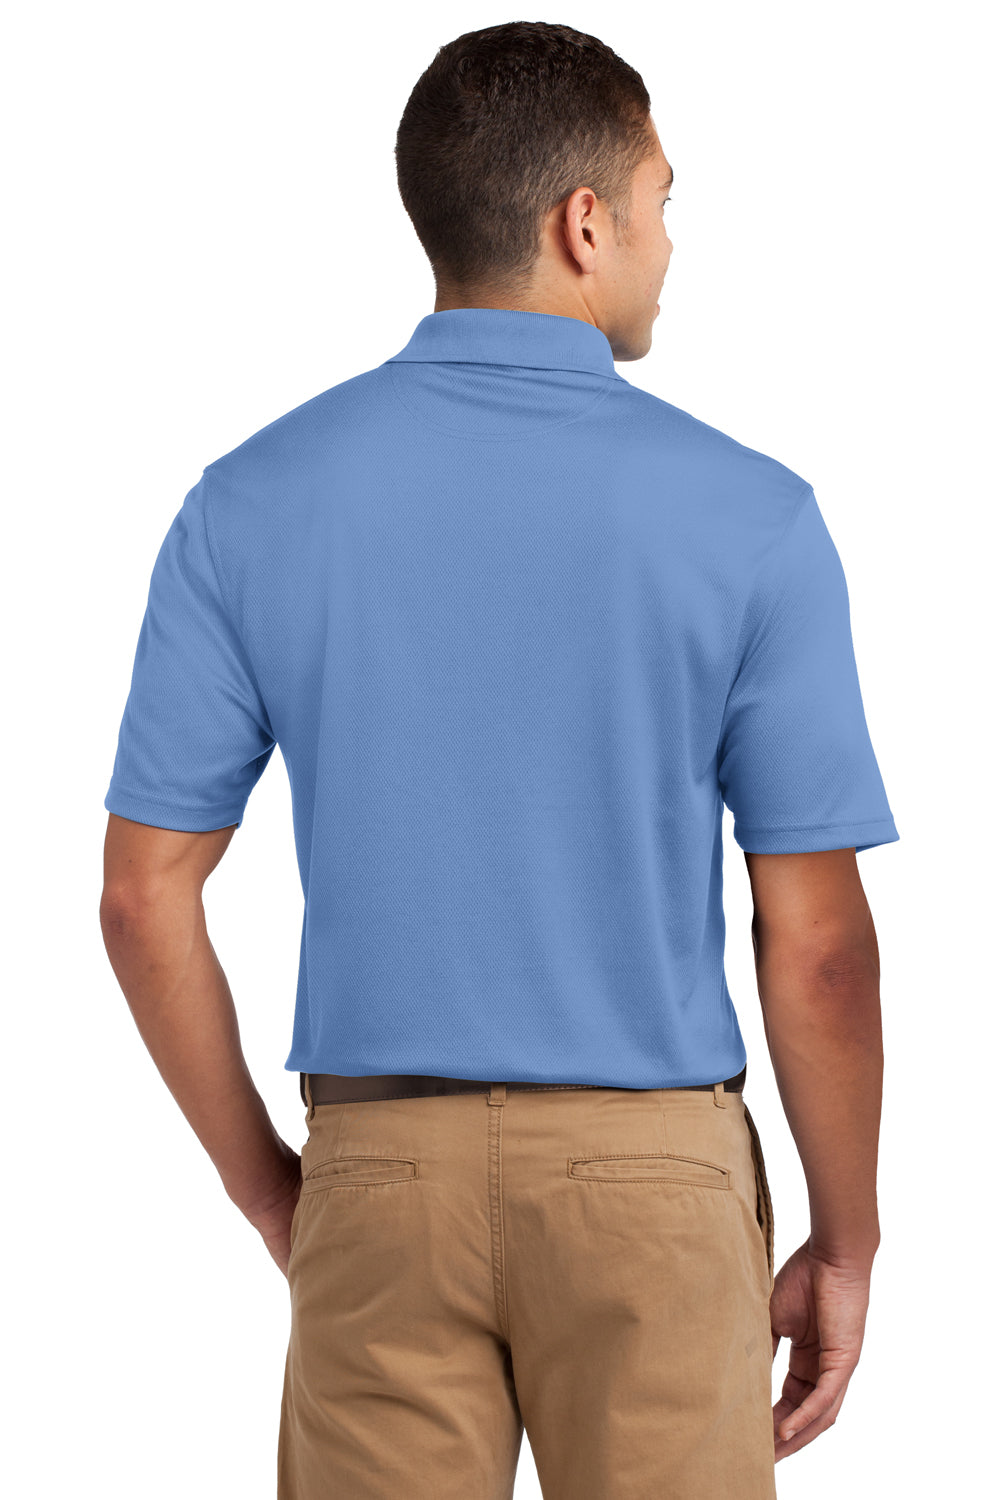 Sport-Tek K469 Mens Dri-Mesh Moisture Wicking Short Sleeve Polo Shirt Blueberry Back